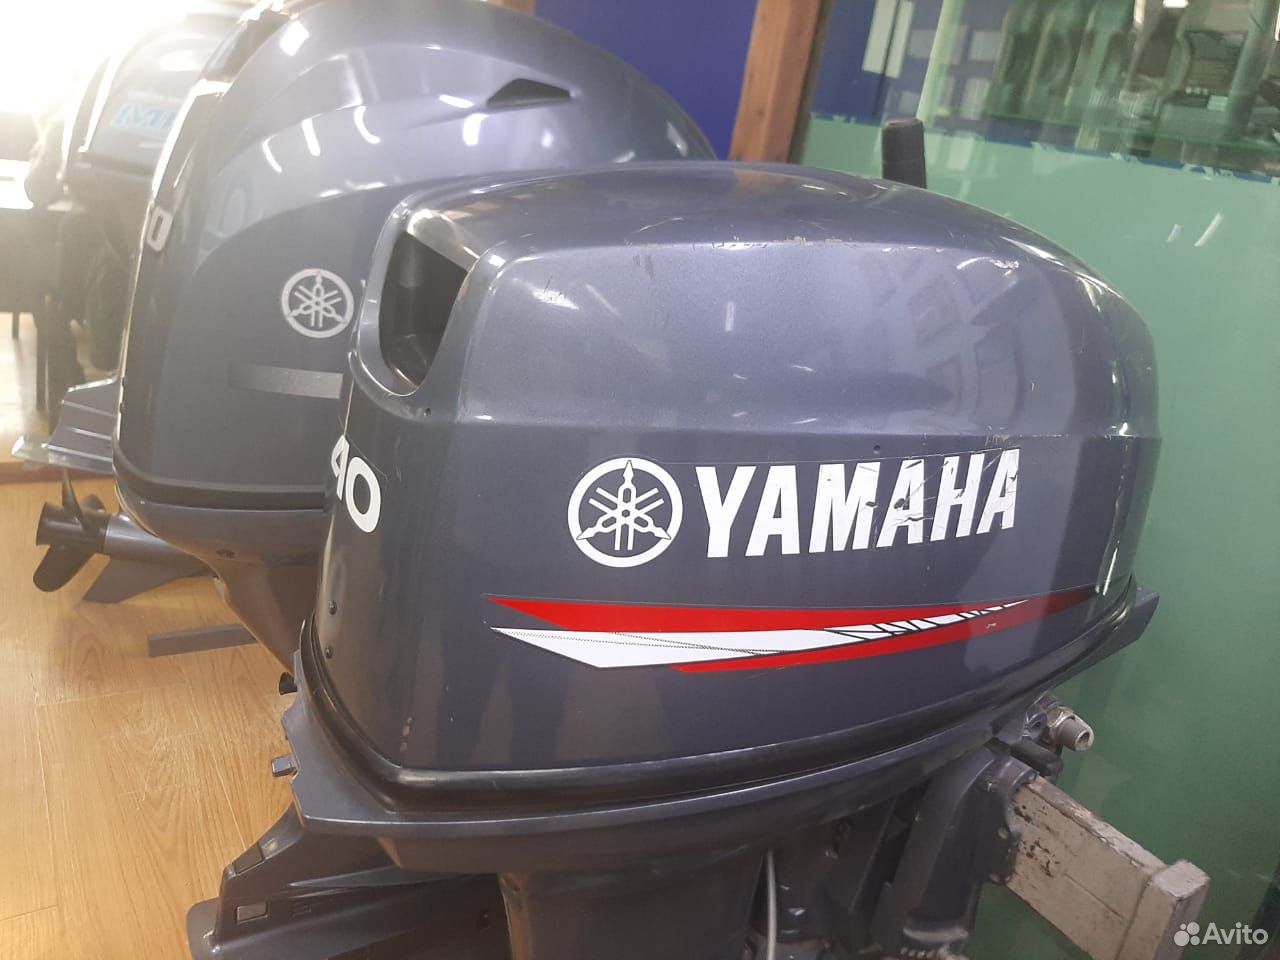 2 тактный лодочный мотор Yamaha 40 xmhs 89020564906 купить 1